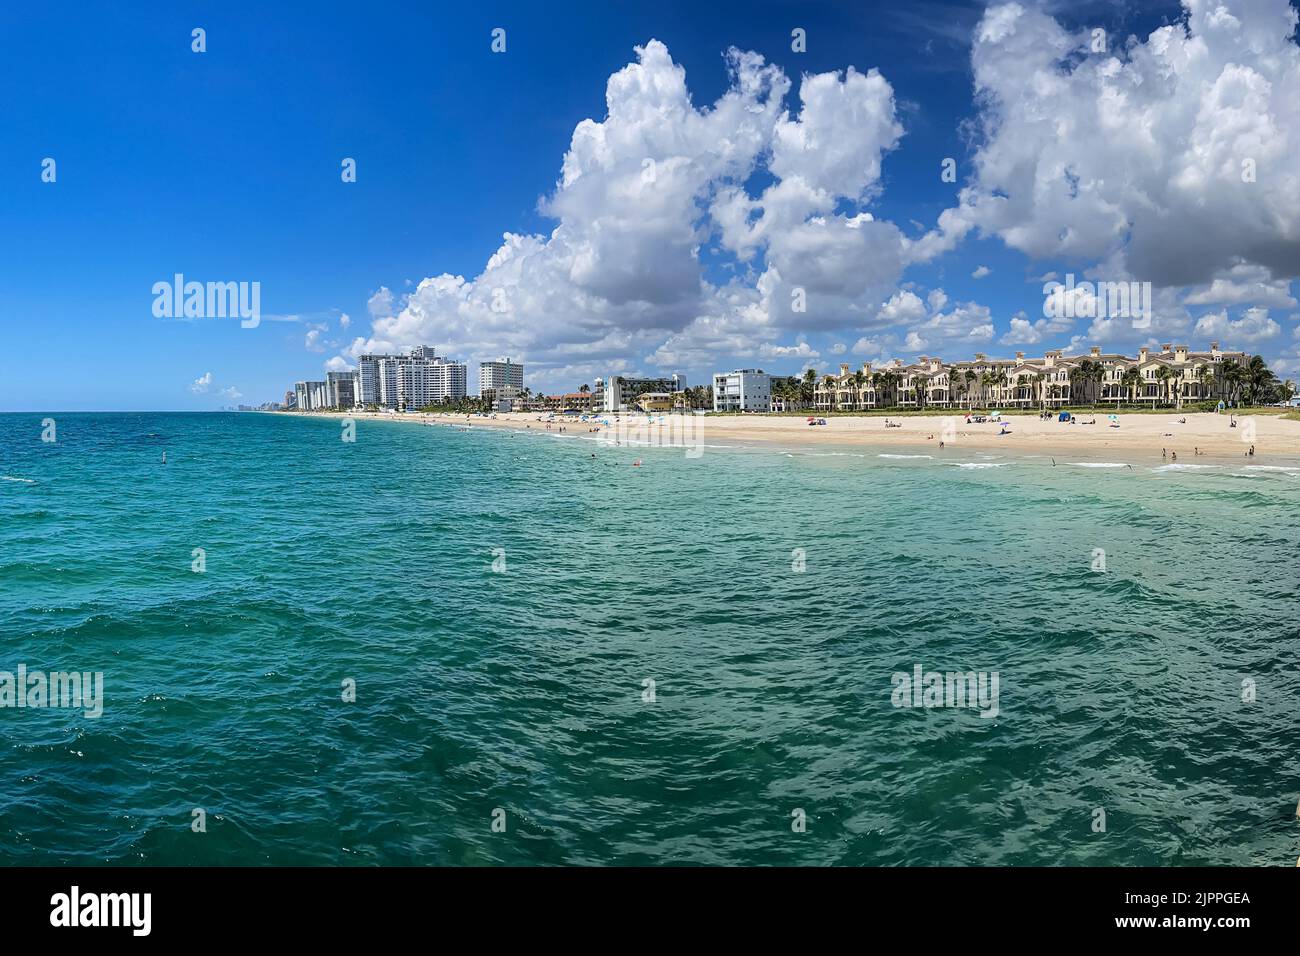 FORT LAUDERDALE, Floride / États-Unis - 11 JUILLET : une vue panoramique montre l'océan, les condos et les hôtels alignés le long de la côte sur 11 juillet 2022 à fort Lauderdale, Floride. Banque D'Images